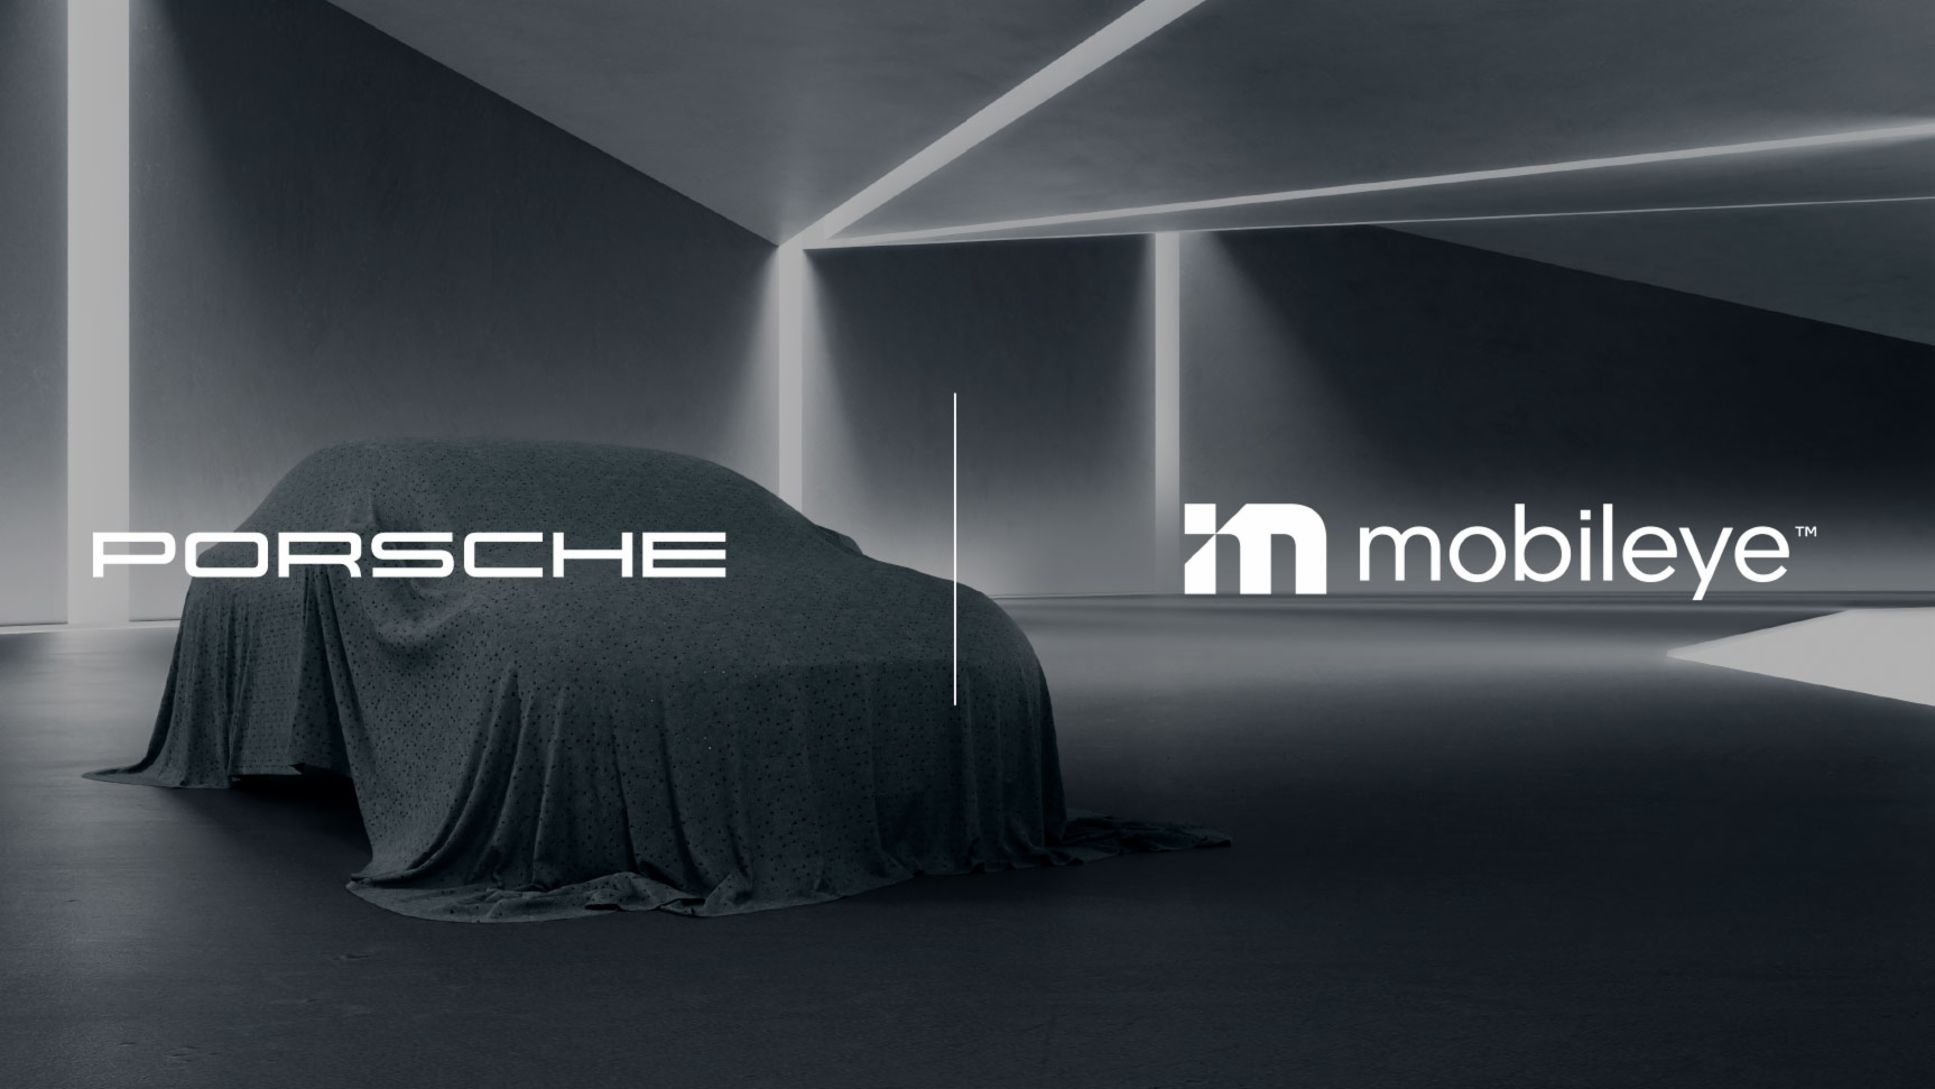 Porsche driving experience set to transform with autonomous vehicle entry